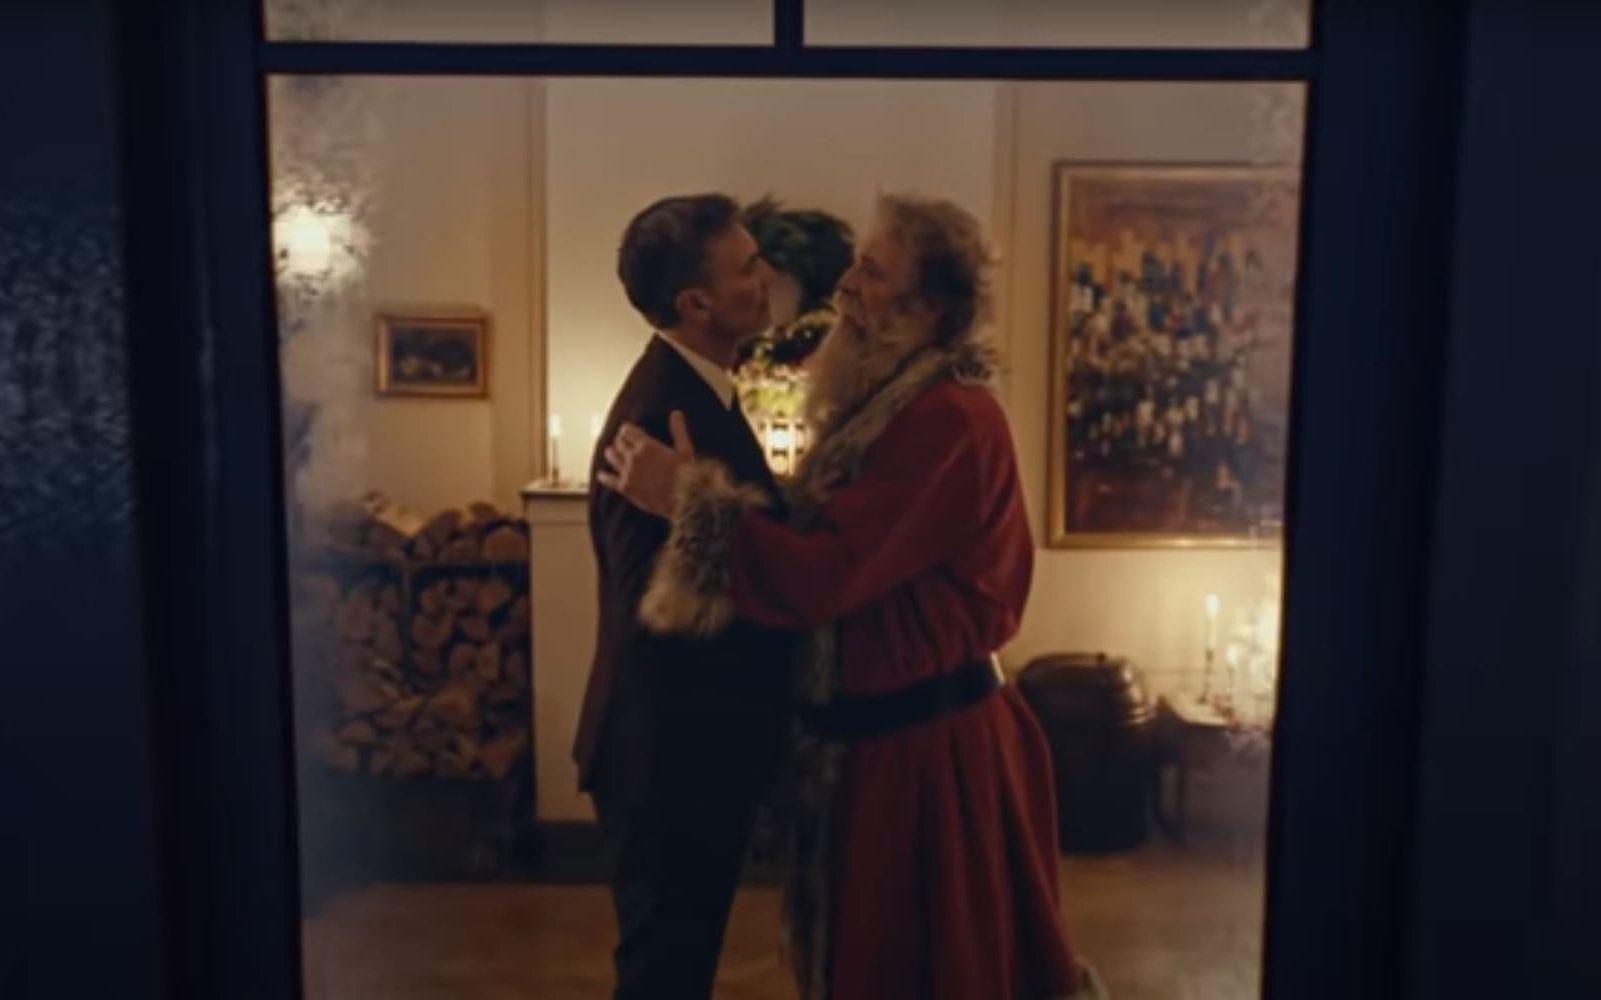 En norsk reklamfilm där tomten porträtteras som homosexuell har fått stor spridning internationellt.